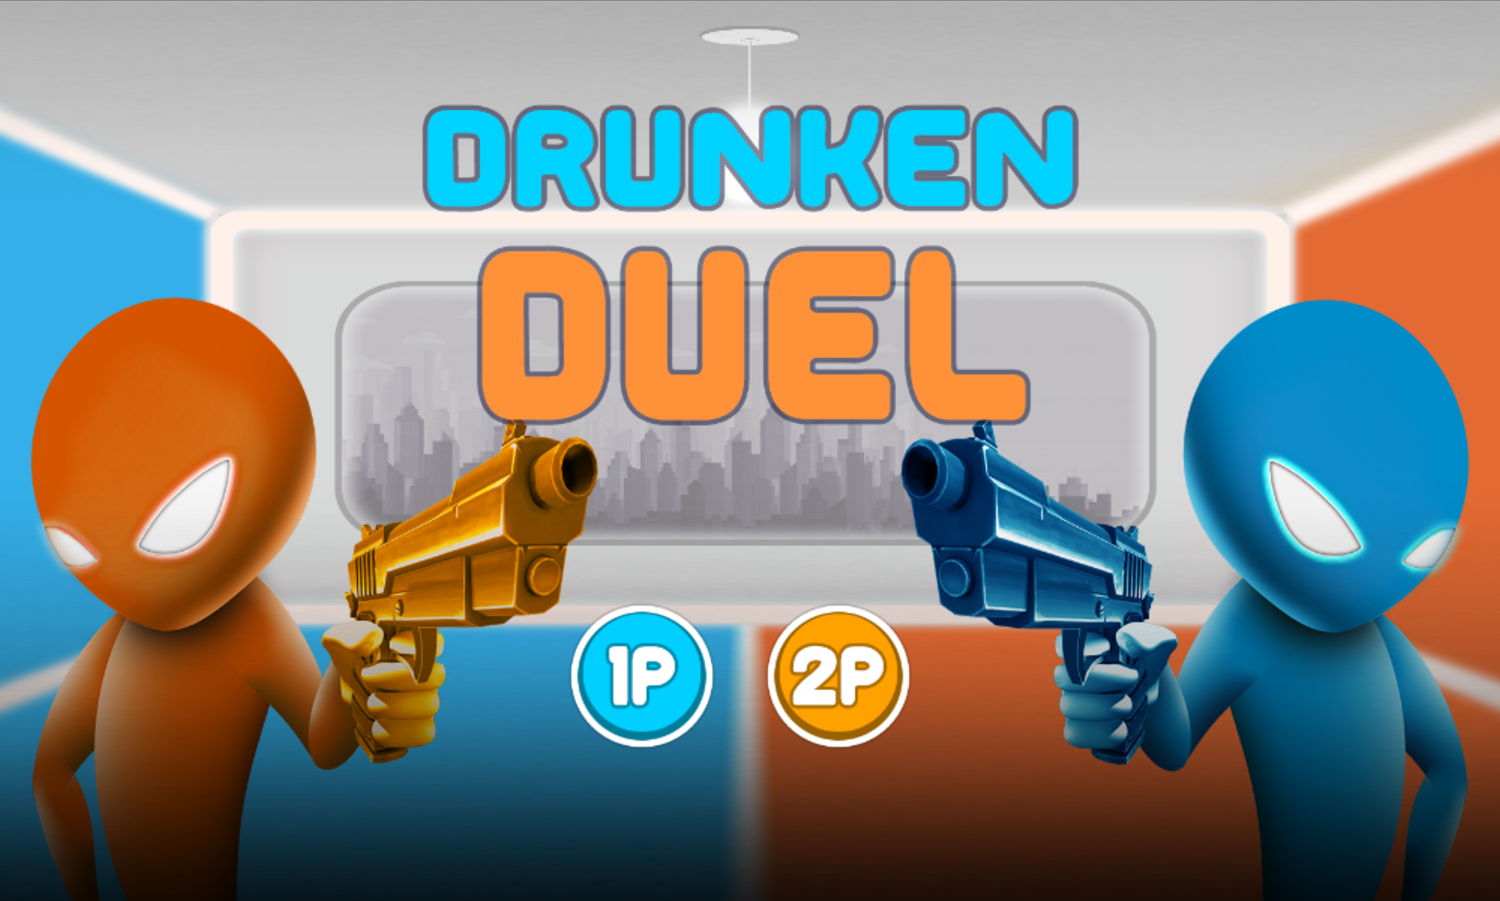 Drunken Duel Game Welcome Screen Screenshot.